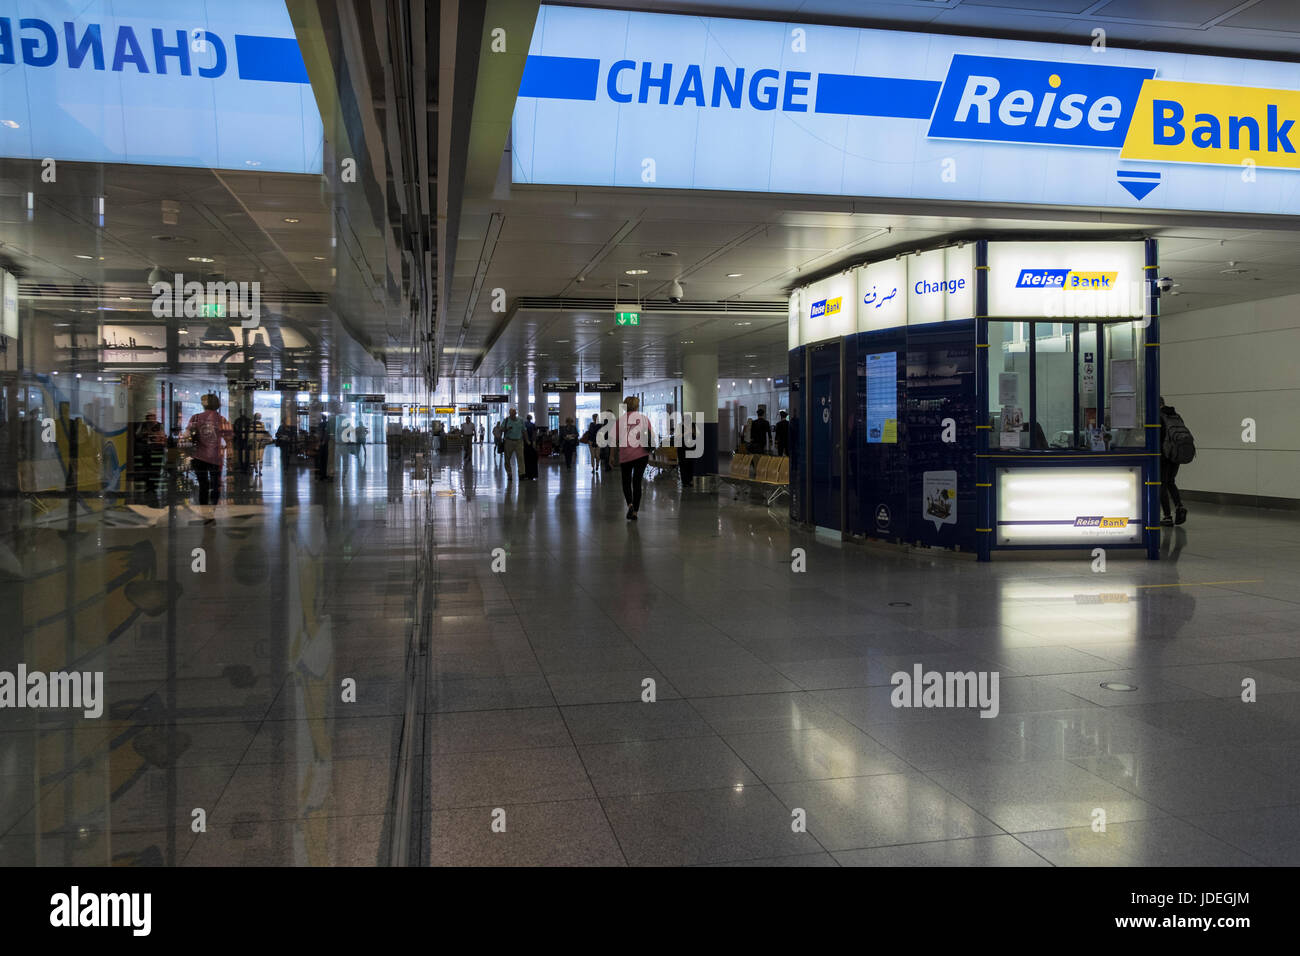 Reise banco cambio de moneda quiosco en la entrada al aeropuerto de Munich, Alemania Foto de stock